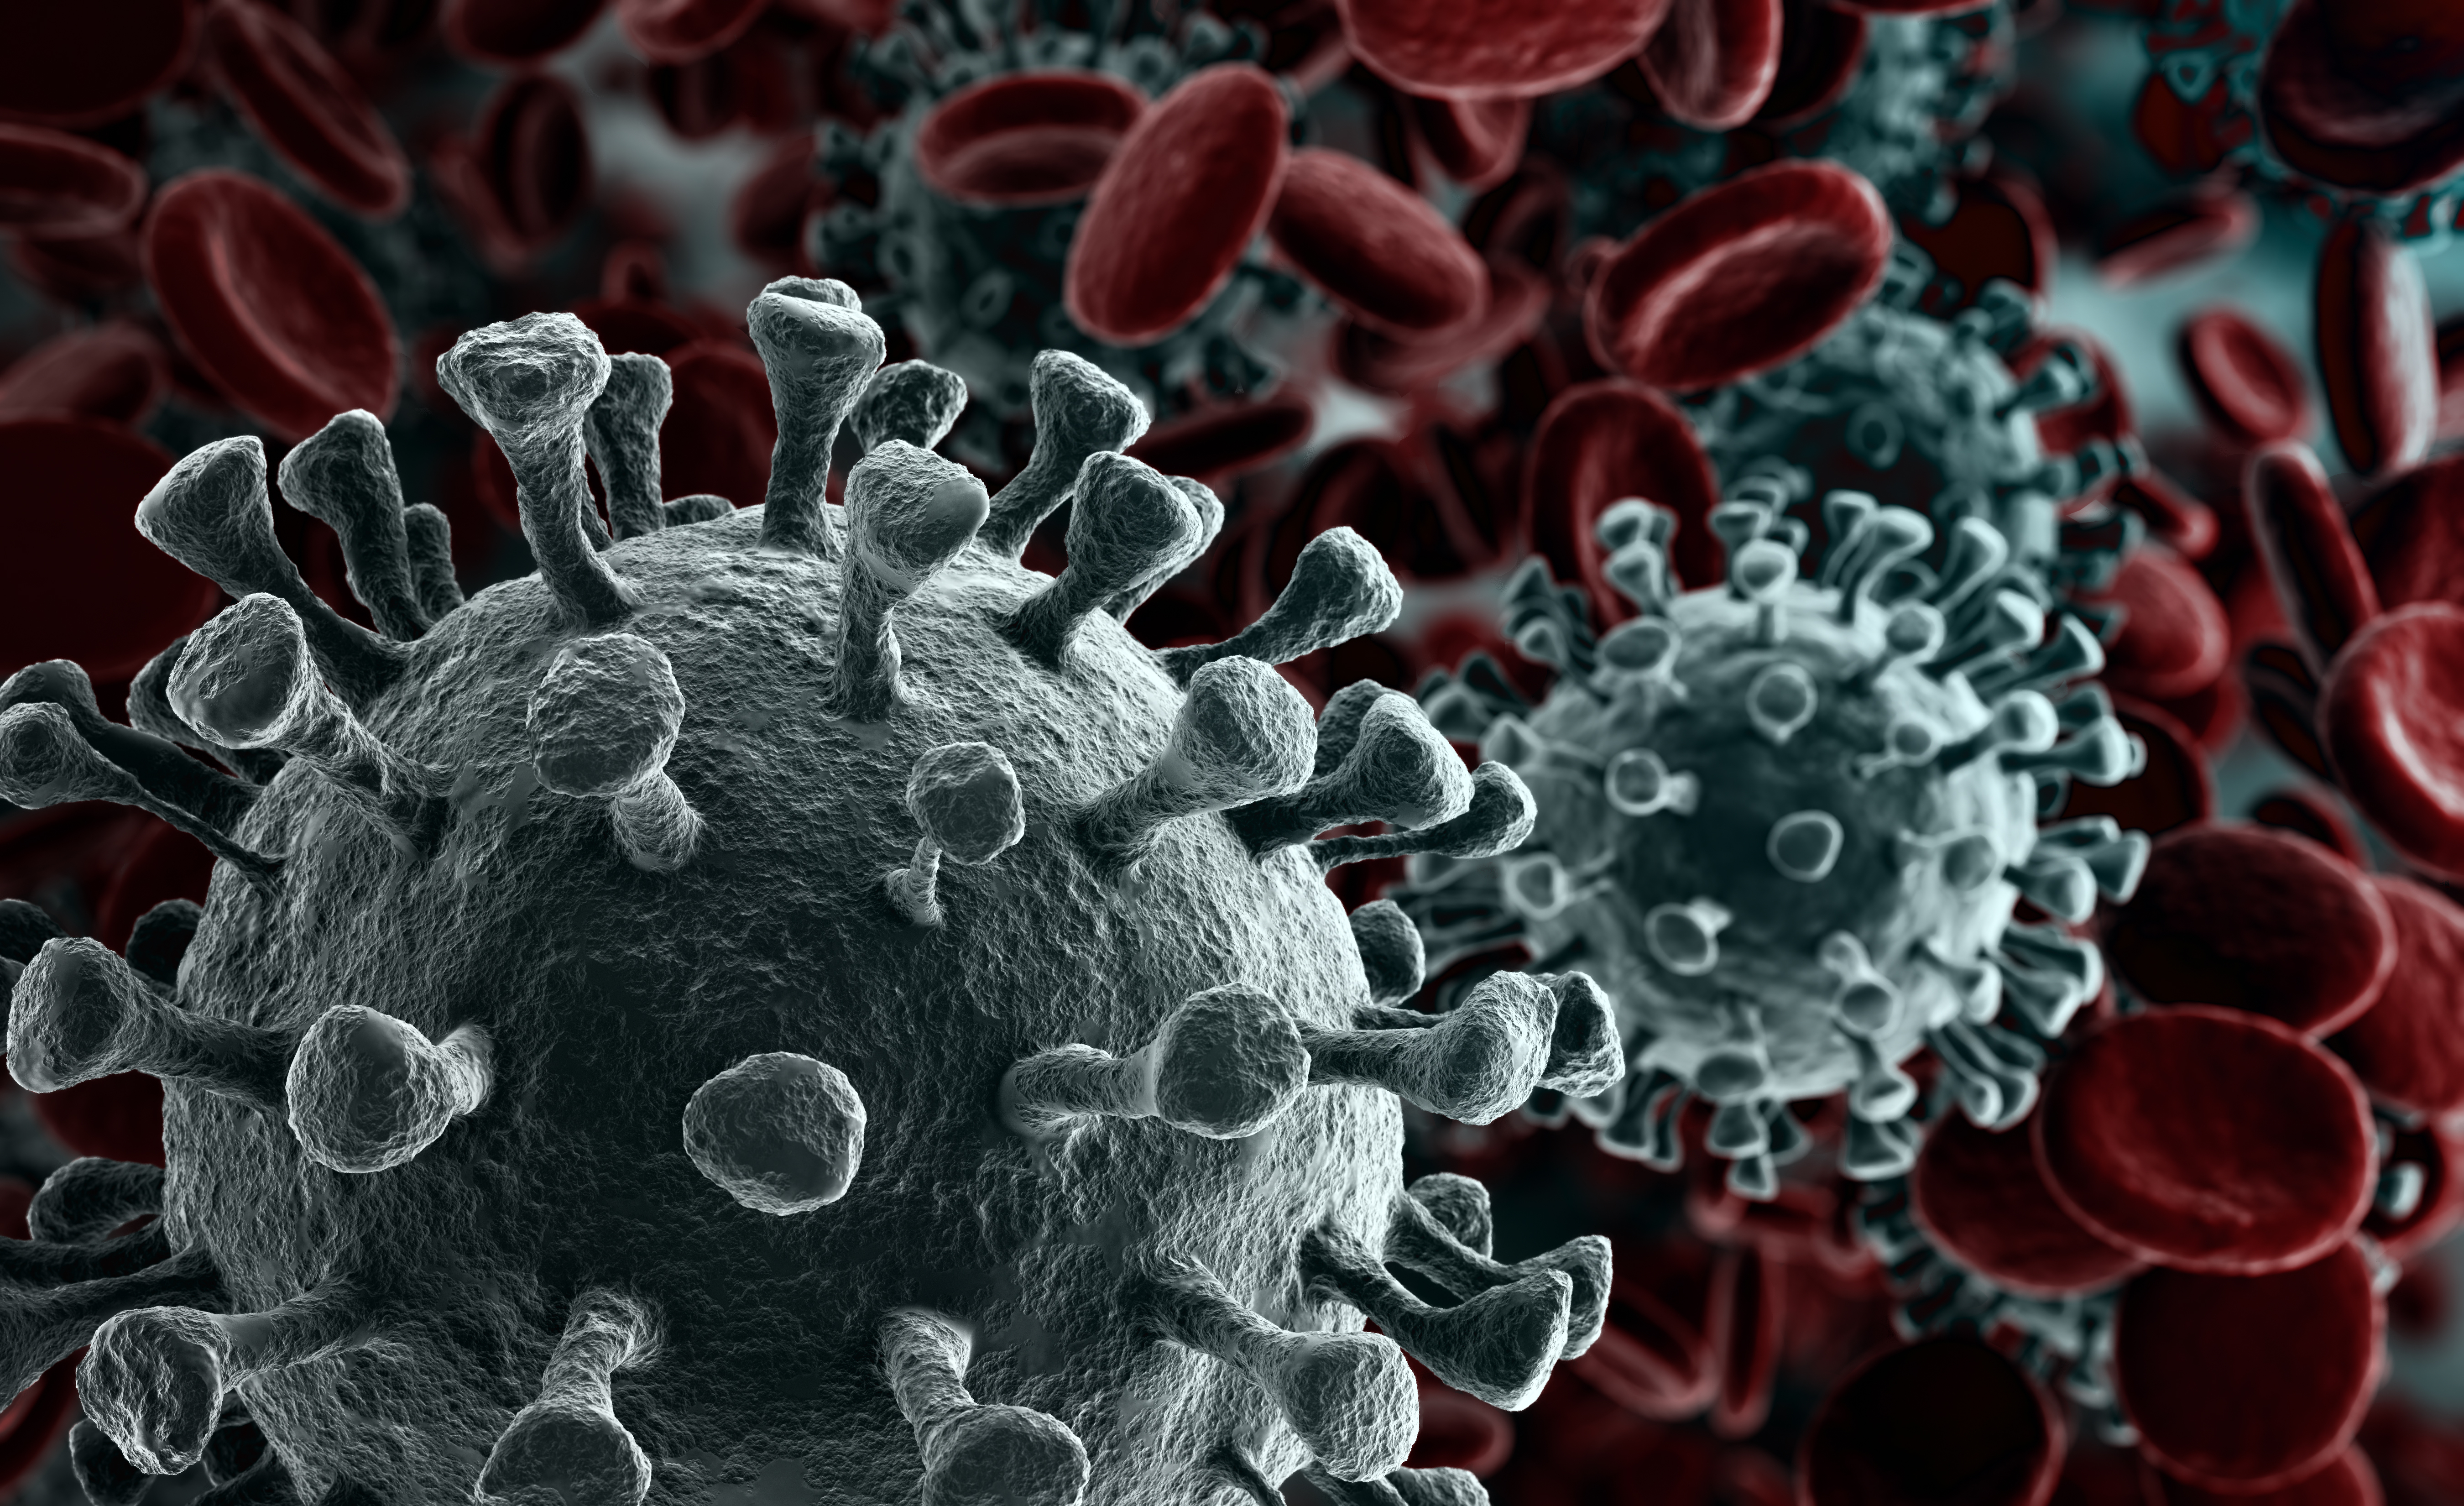 Le Monde: Noul coronavirus circula în Franţa încă din noiembrie 2019, potrivit unui studiu